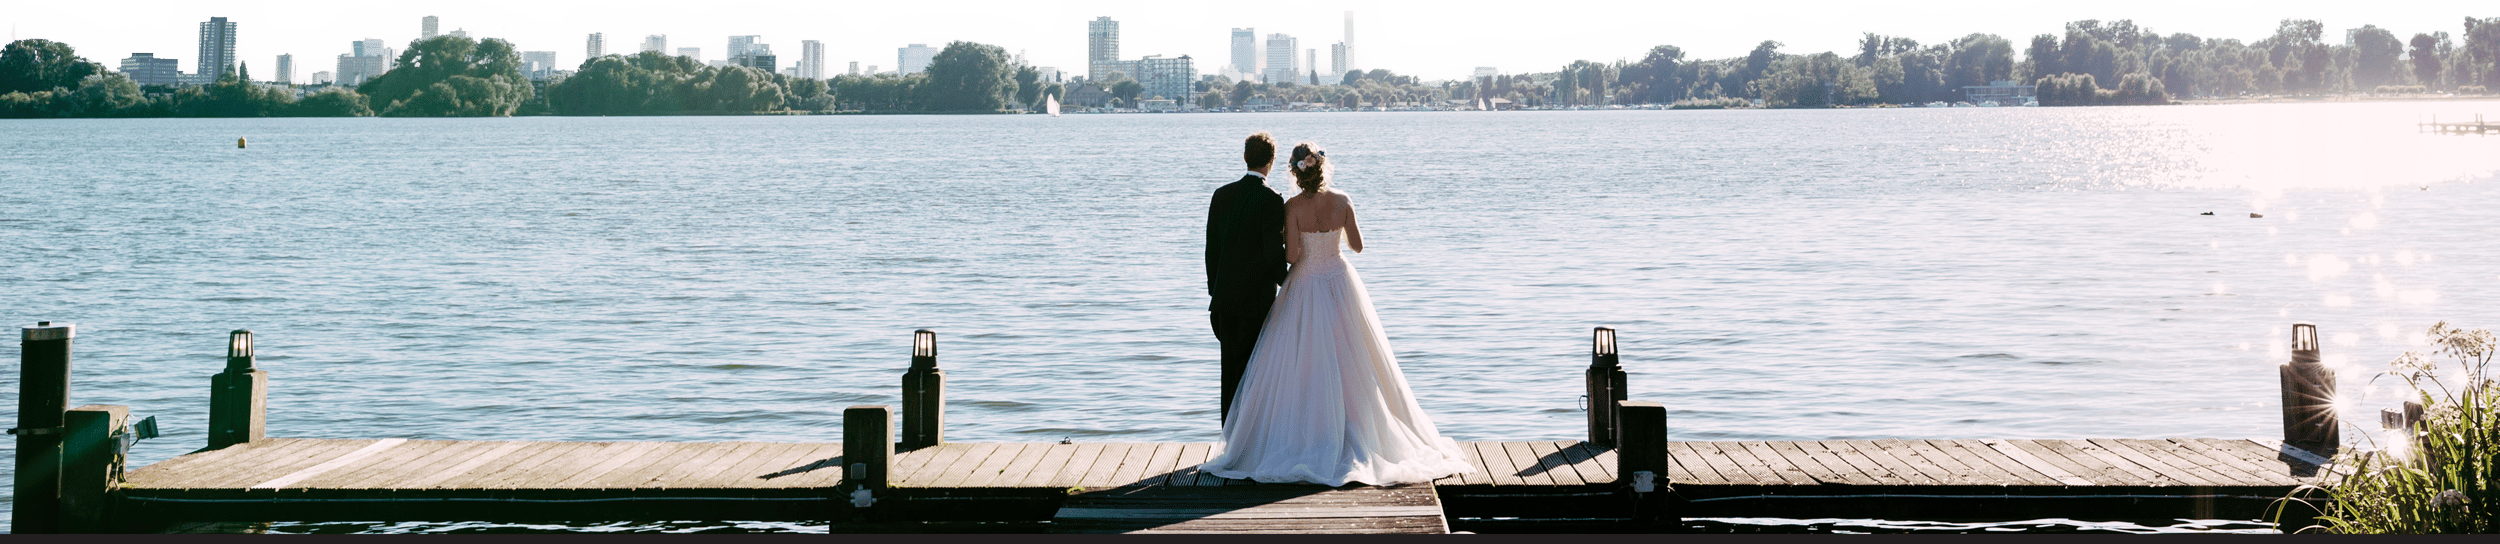 Een bruid en bruidegom poseren voor hun trouwfotograaf op een kade naast een schilderachtig meer.